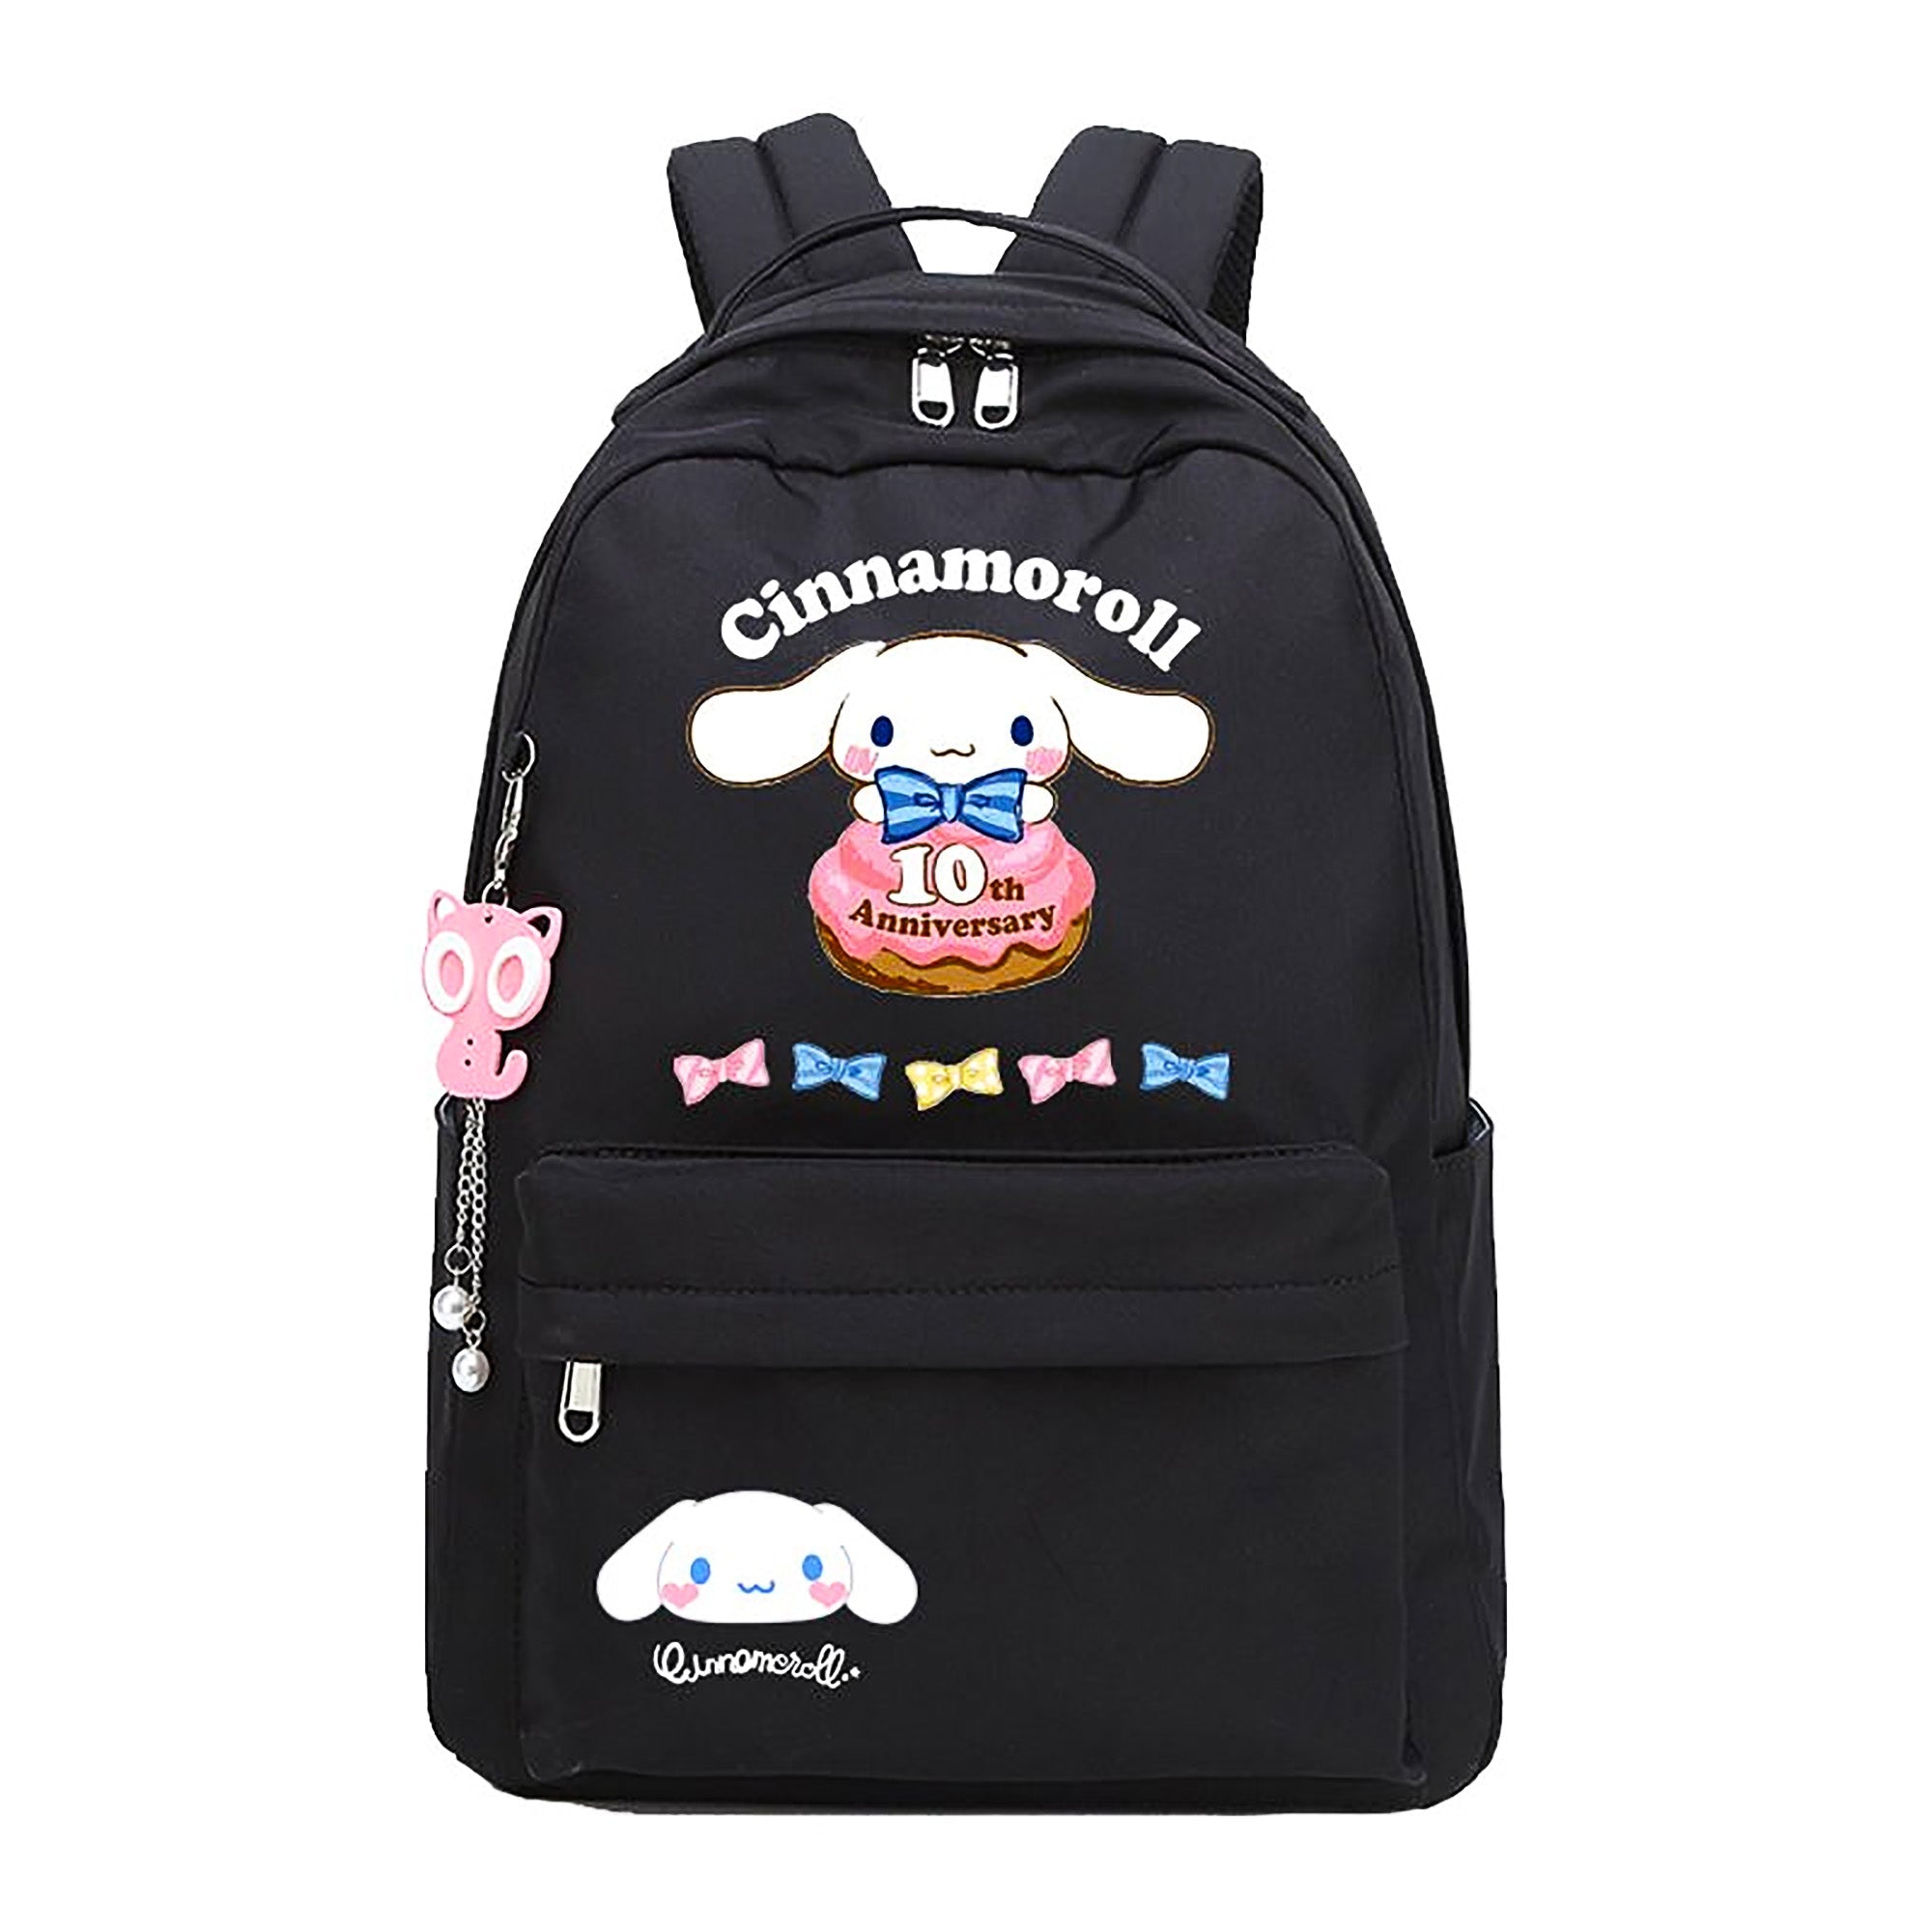 ♡ soft chibi kawaii kitty backpack 3.0